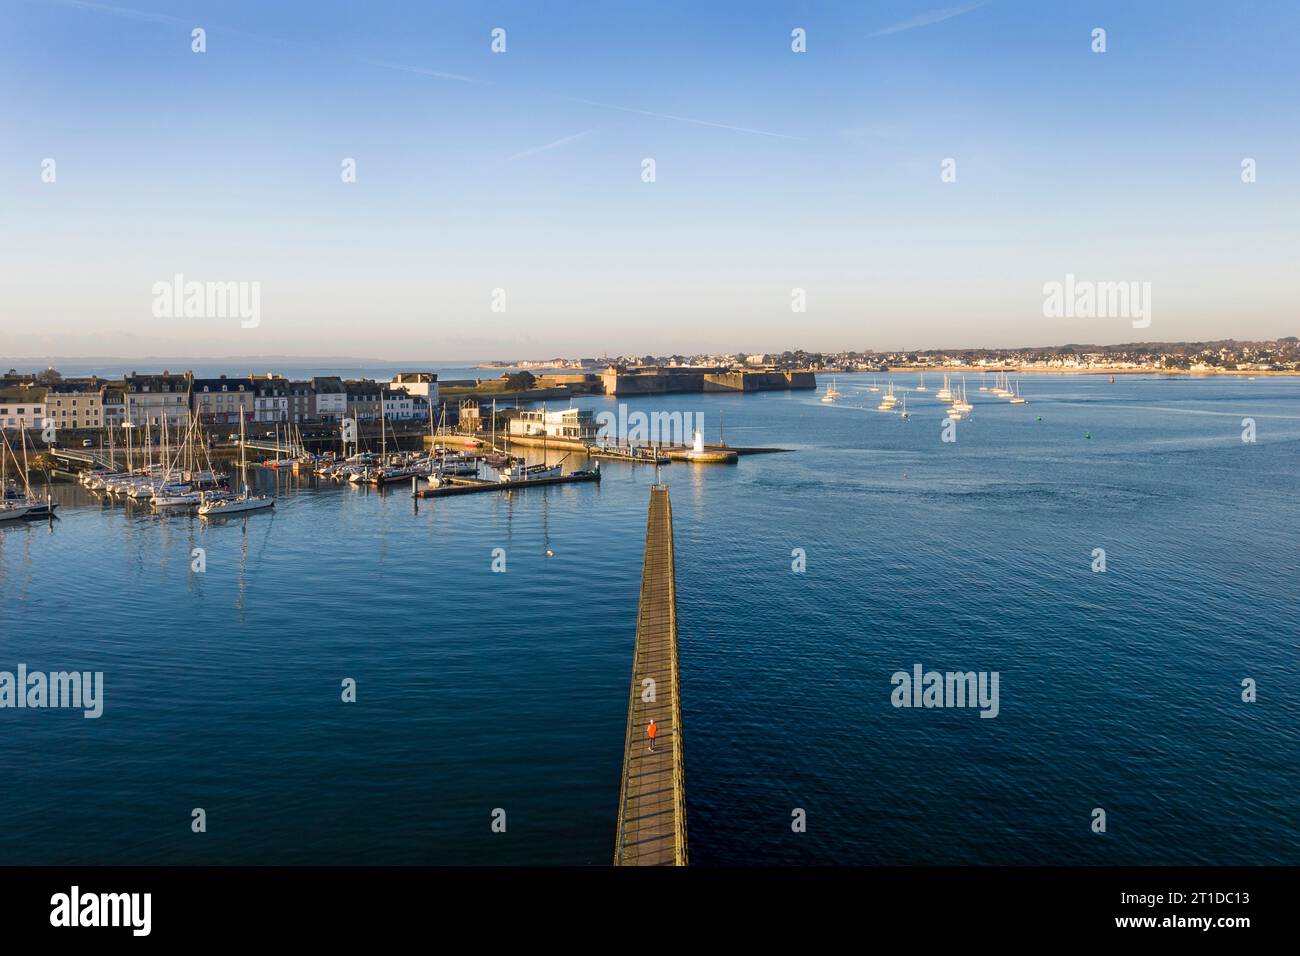 Port-Louis (Bretagne, nord-ouest de la France) : vue aérienne de l'embarcadère de la pointe de Kerzo et de la ville de Port-Louis en arrière-plan. Homme marchant a Banque D'Images